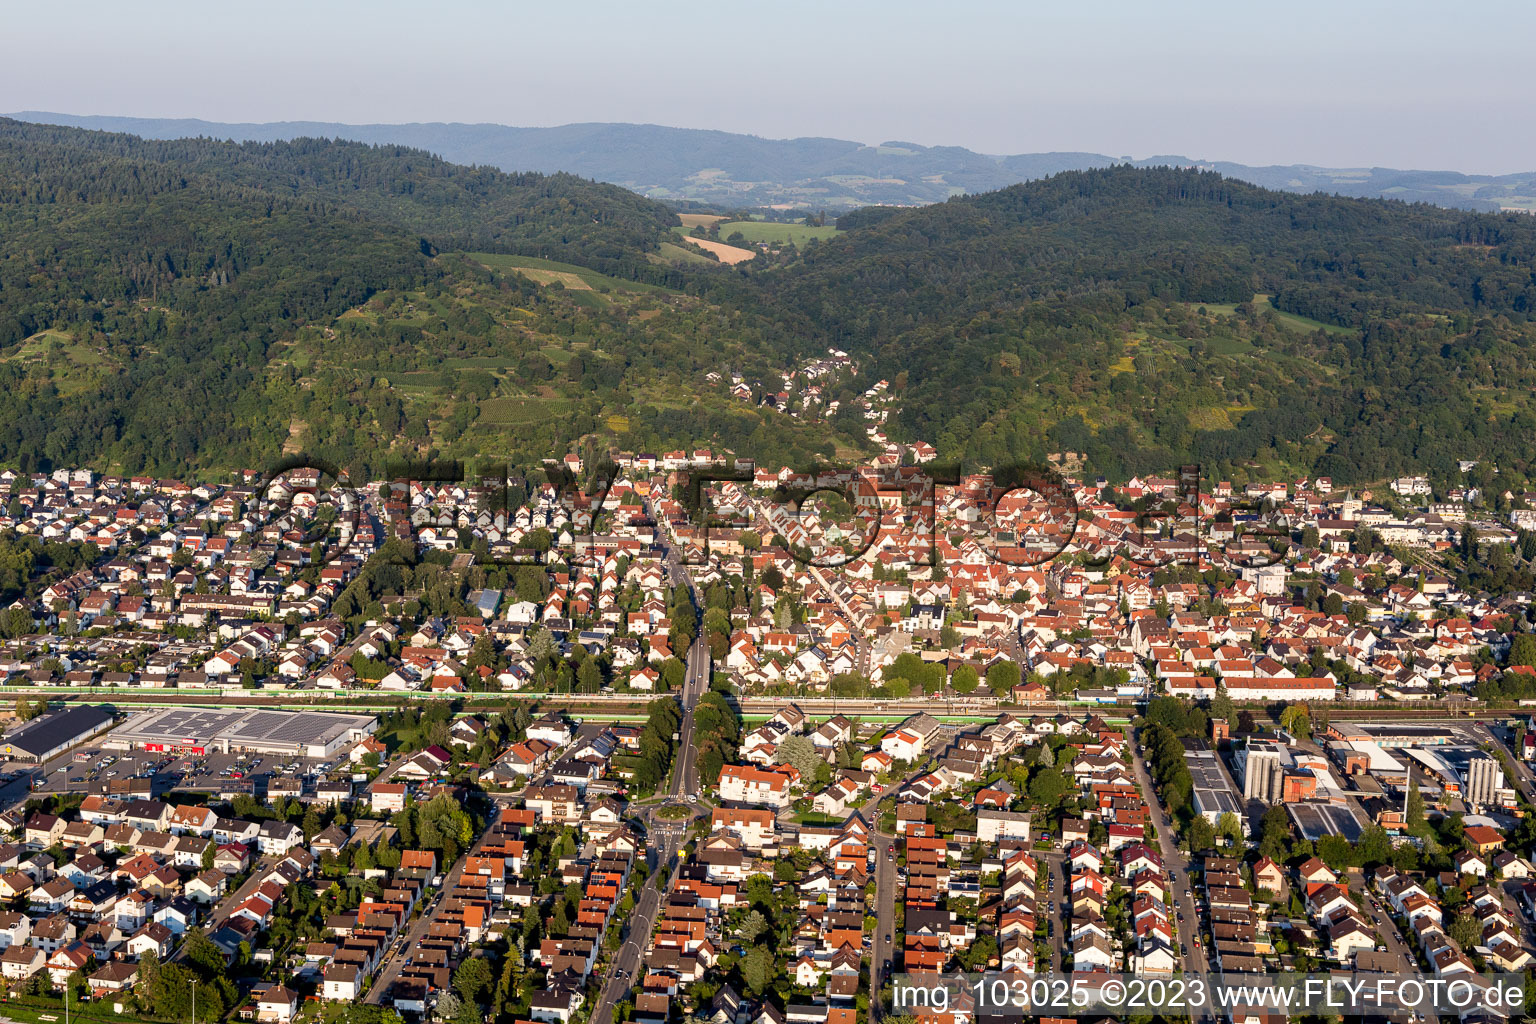 Hemsbach im Bundesland Baden-Württemberg, Deutschland aus der Drohnenperspektive